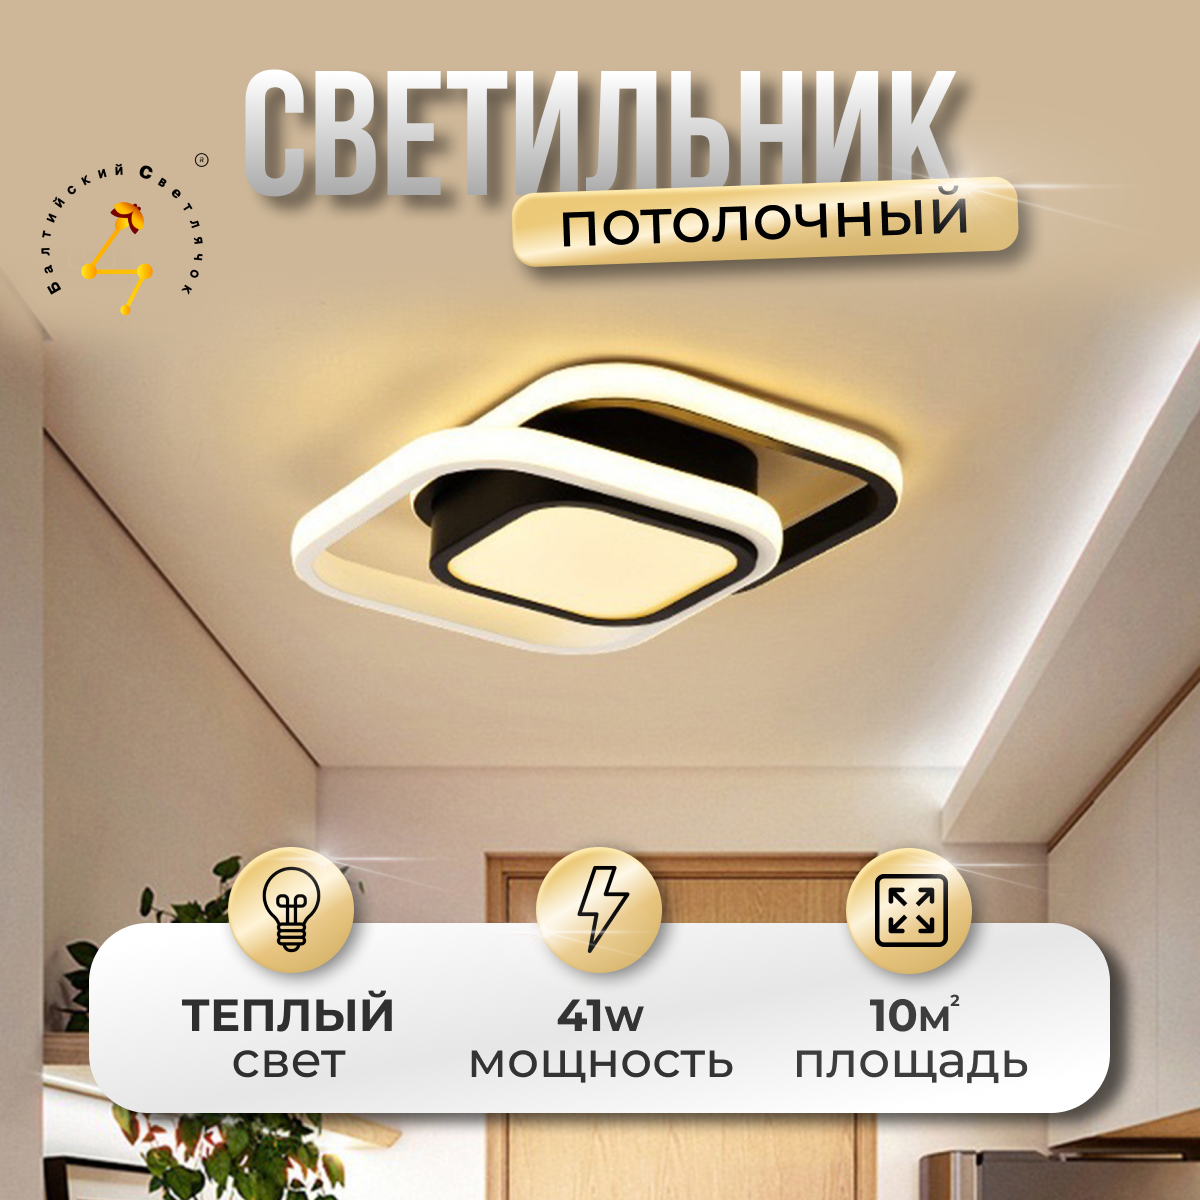 Светильник потолочный LED 41 Вт, теплый свет, Балтийский Светлячок, MC-1009T